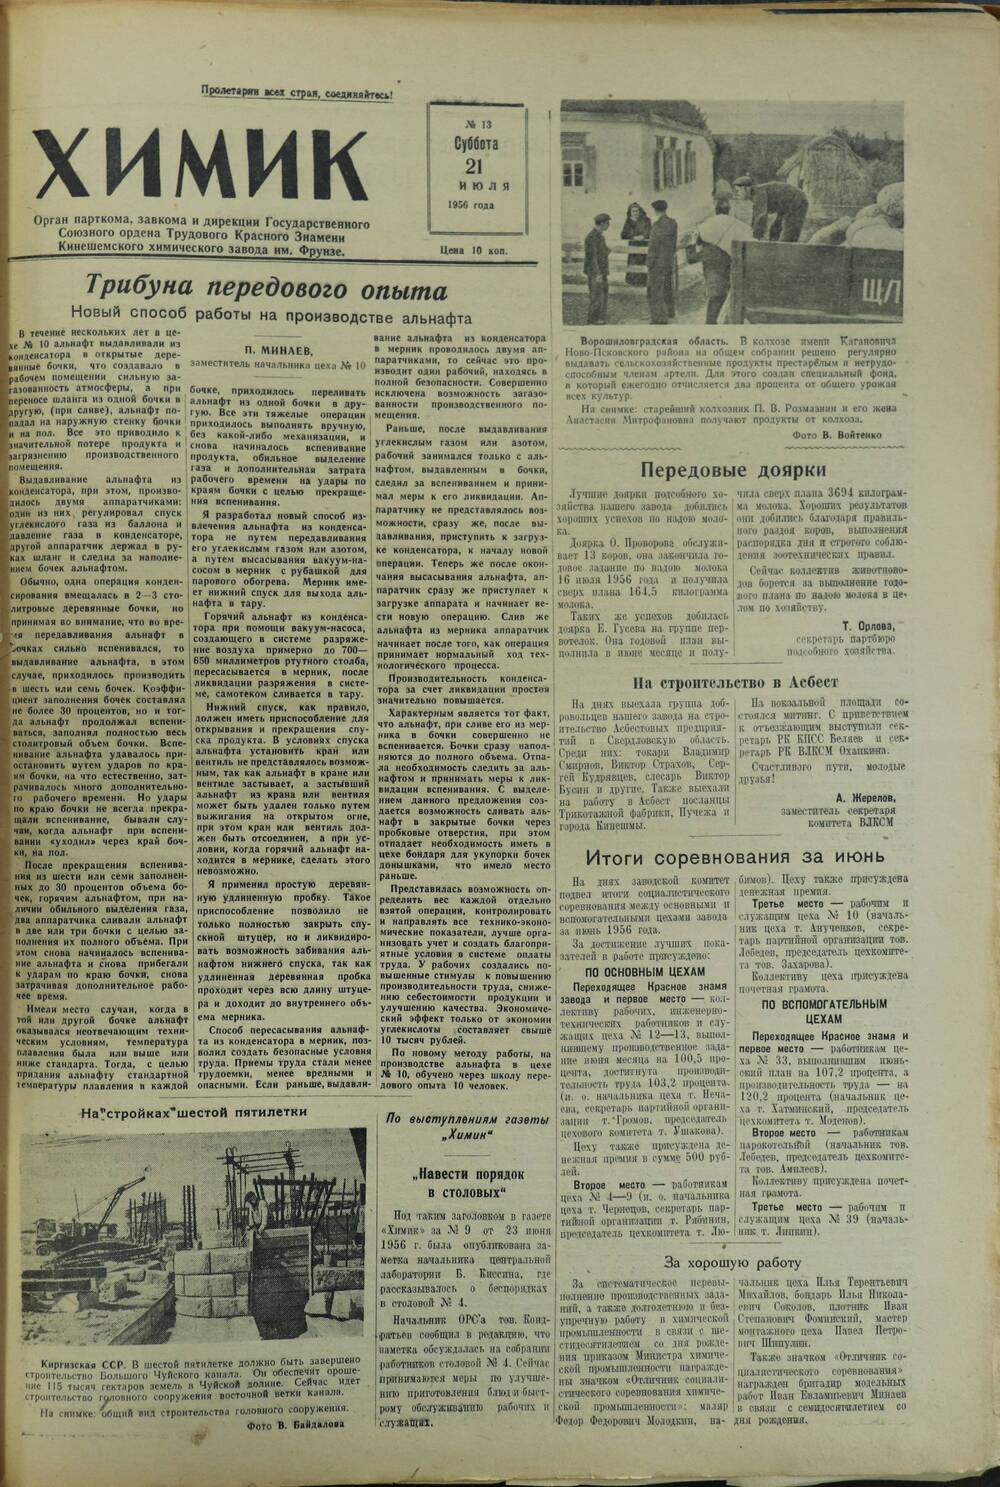 Газета «Химик» № 13 от 21 июля 1956 года.